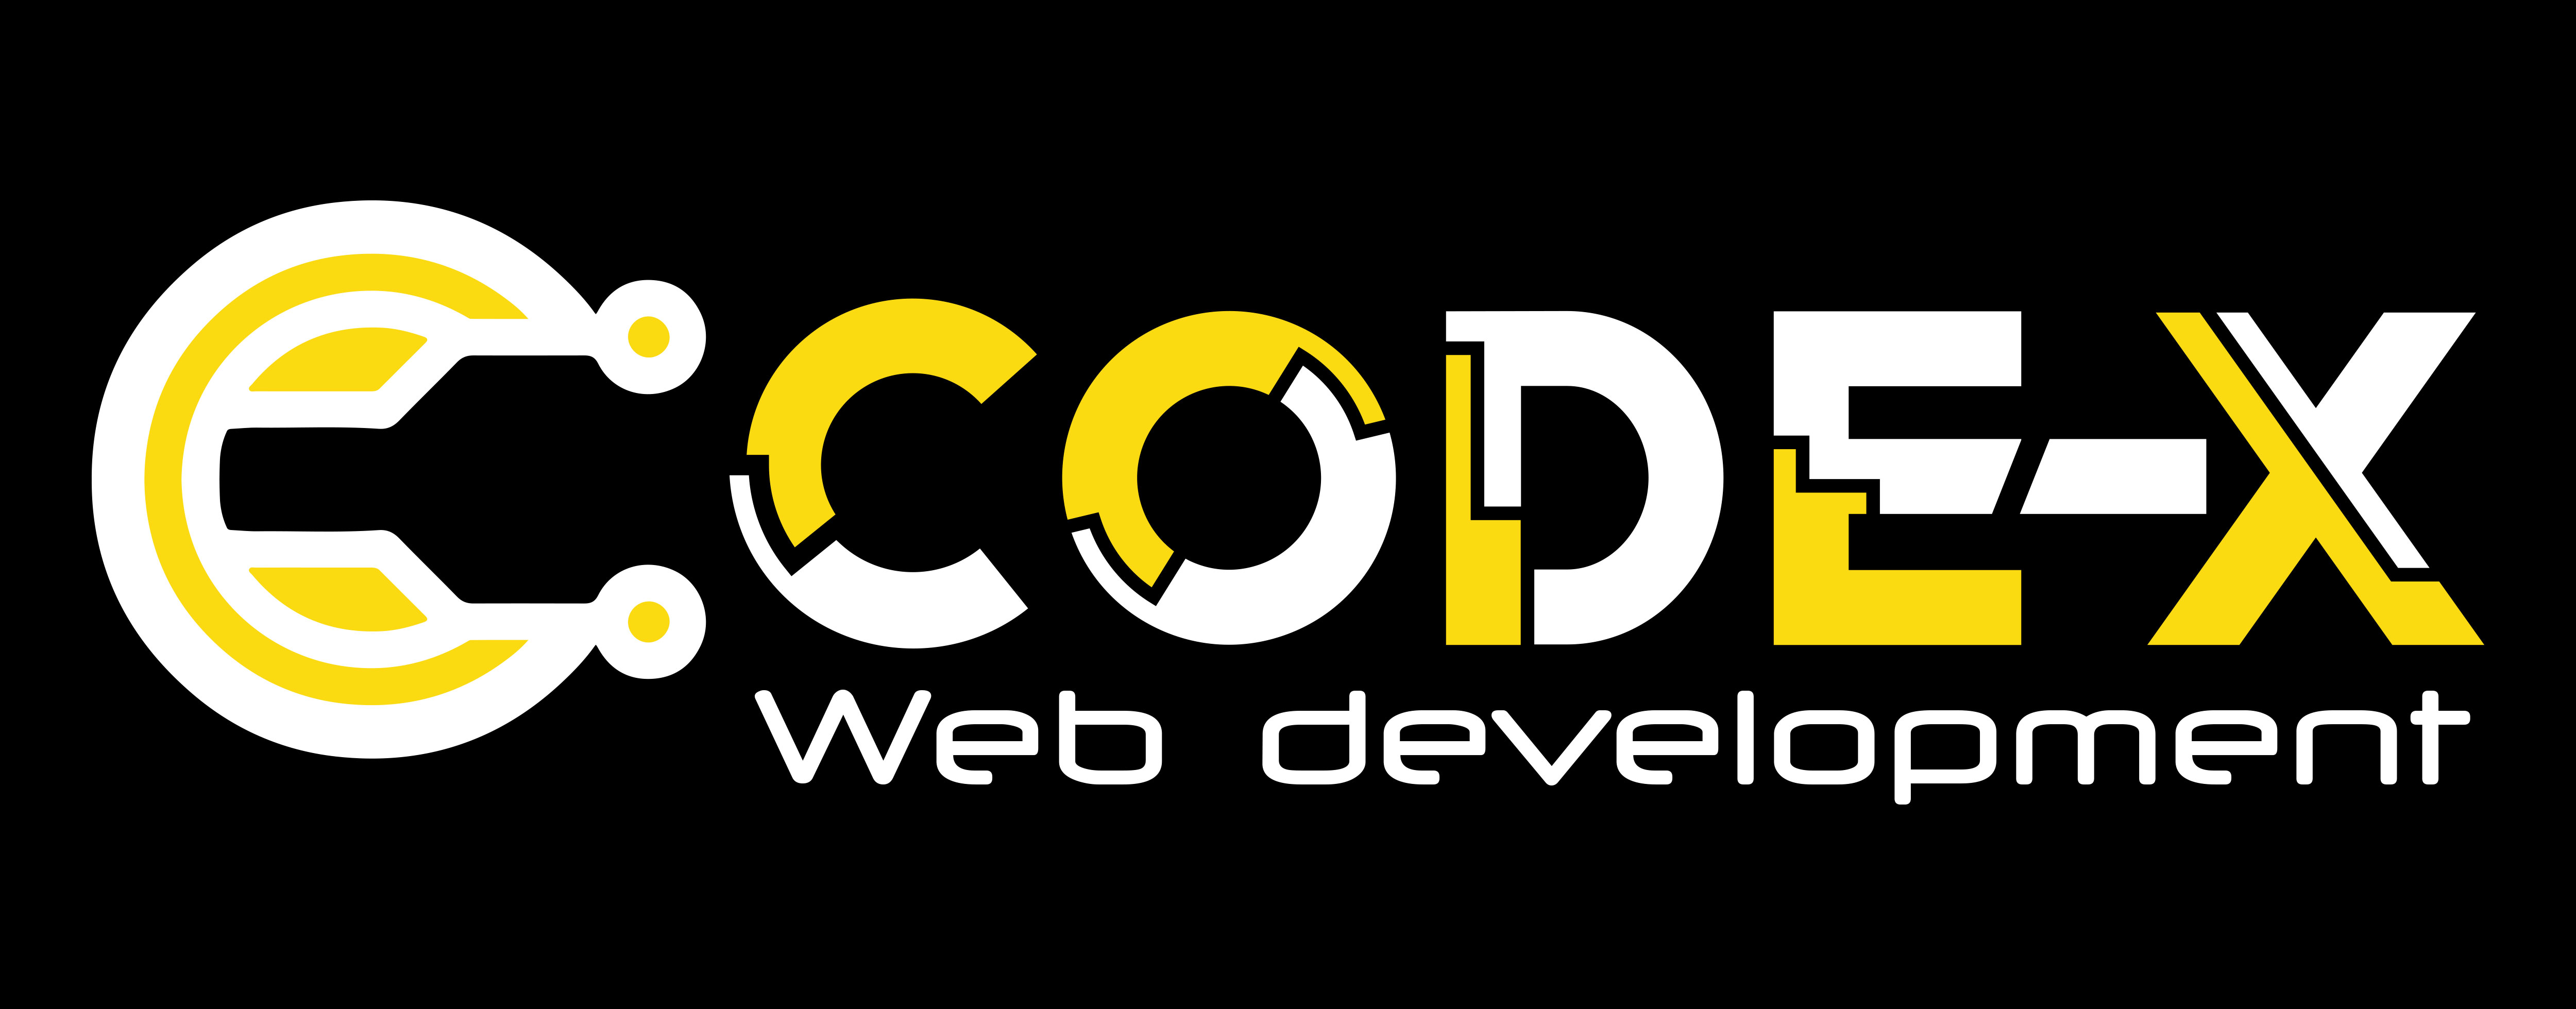 Code-x Web development